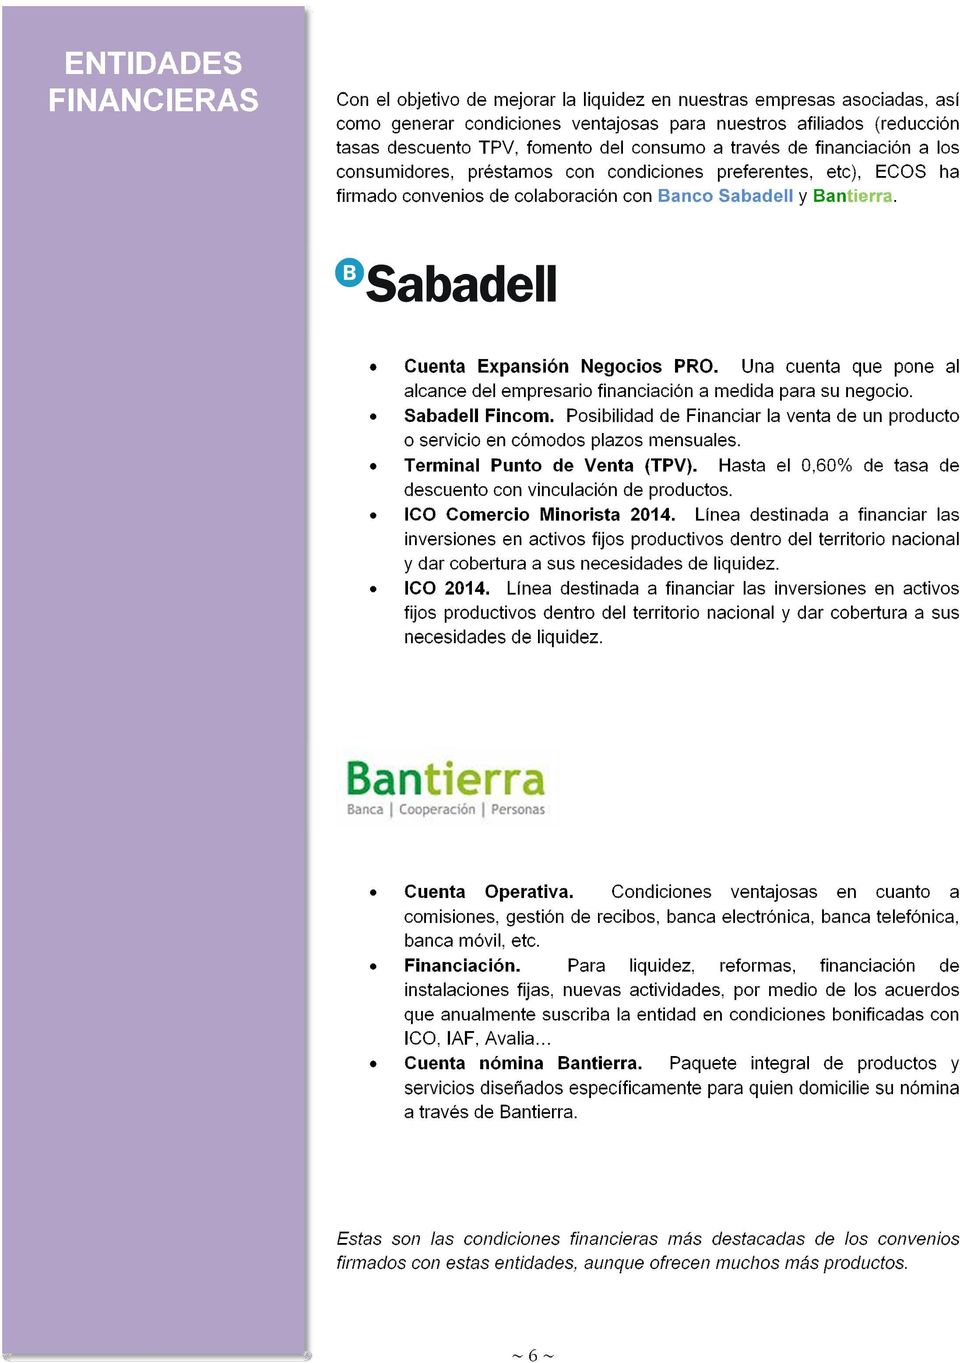 Una cuenta que pone al alcance del empresario financiación a medida para su negocio. Sabadell Fincom. Posibilidad de Financiar la venta de un producto o servicio en cómodos plazos mensuales.